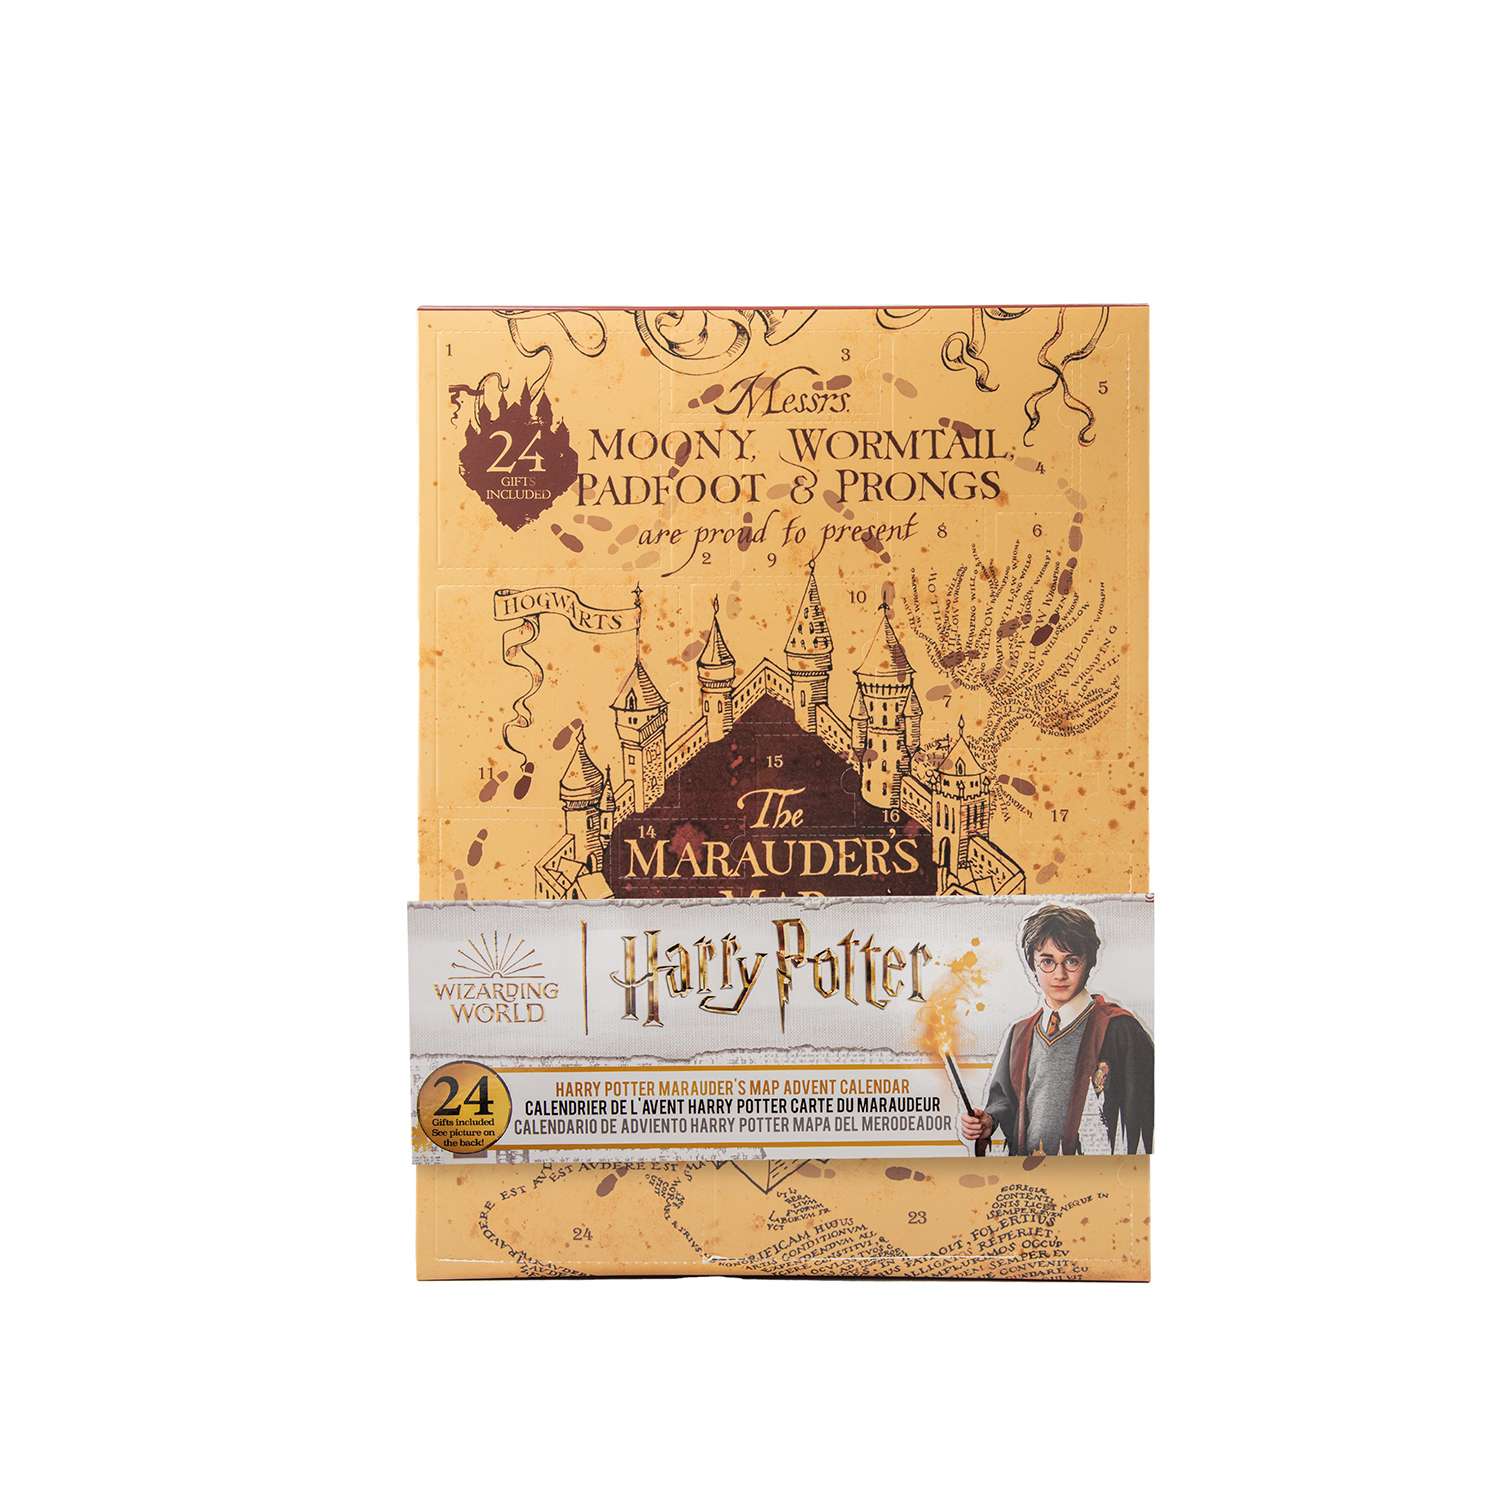 Адвент-календарь Harry Potter Карта мародеров - фото 11